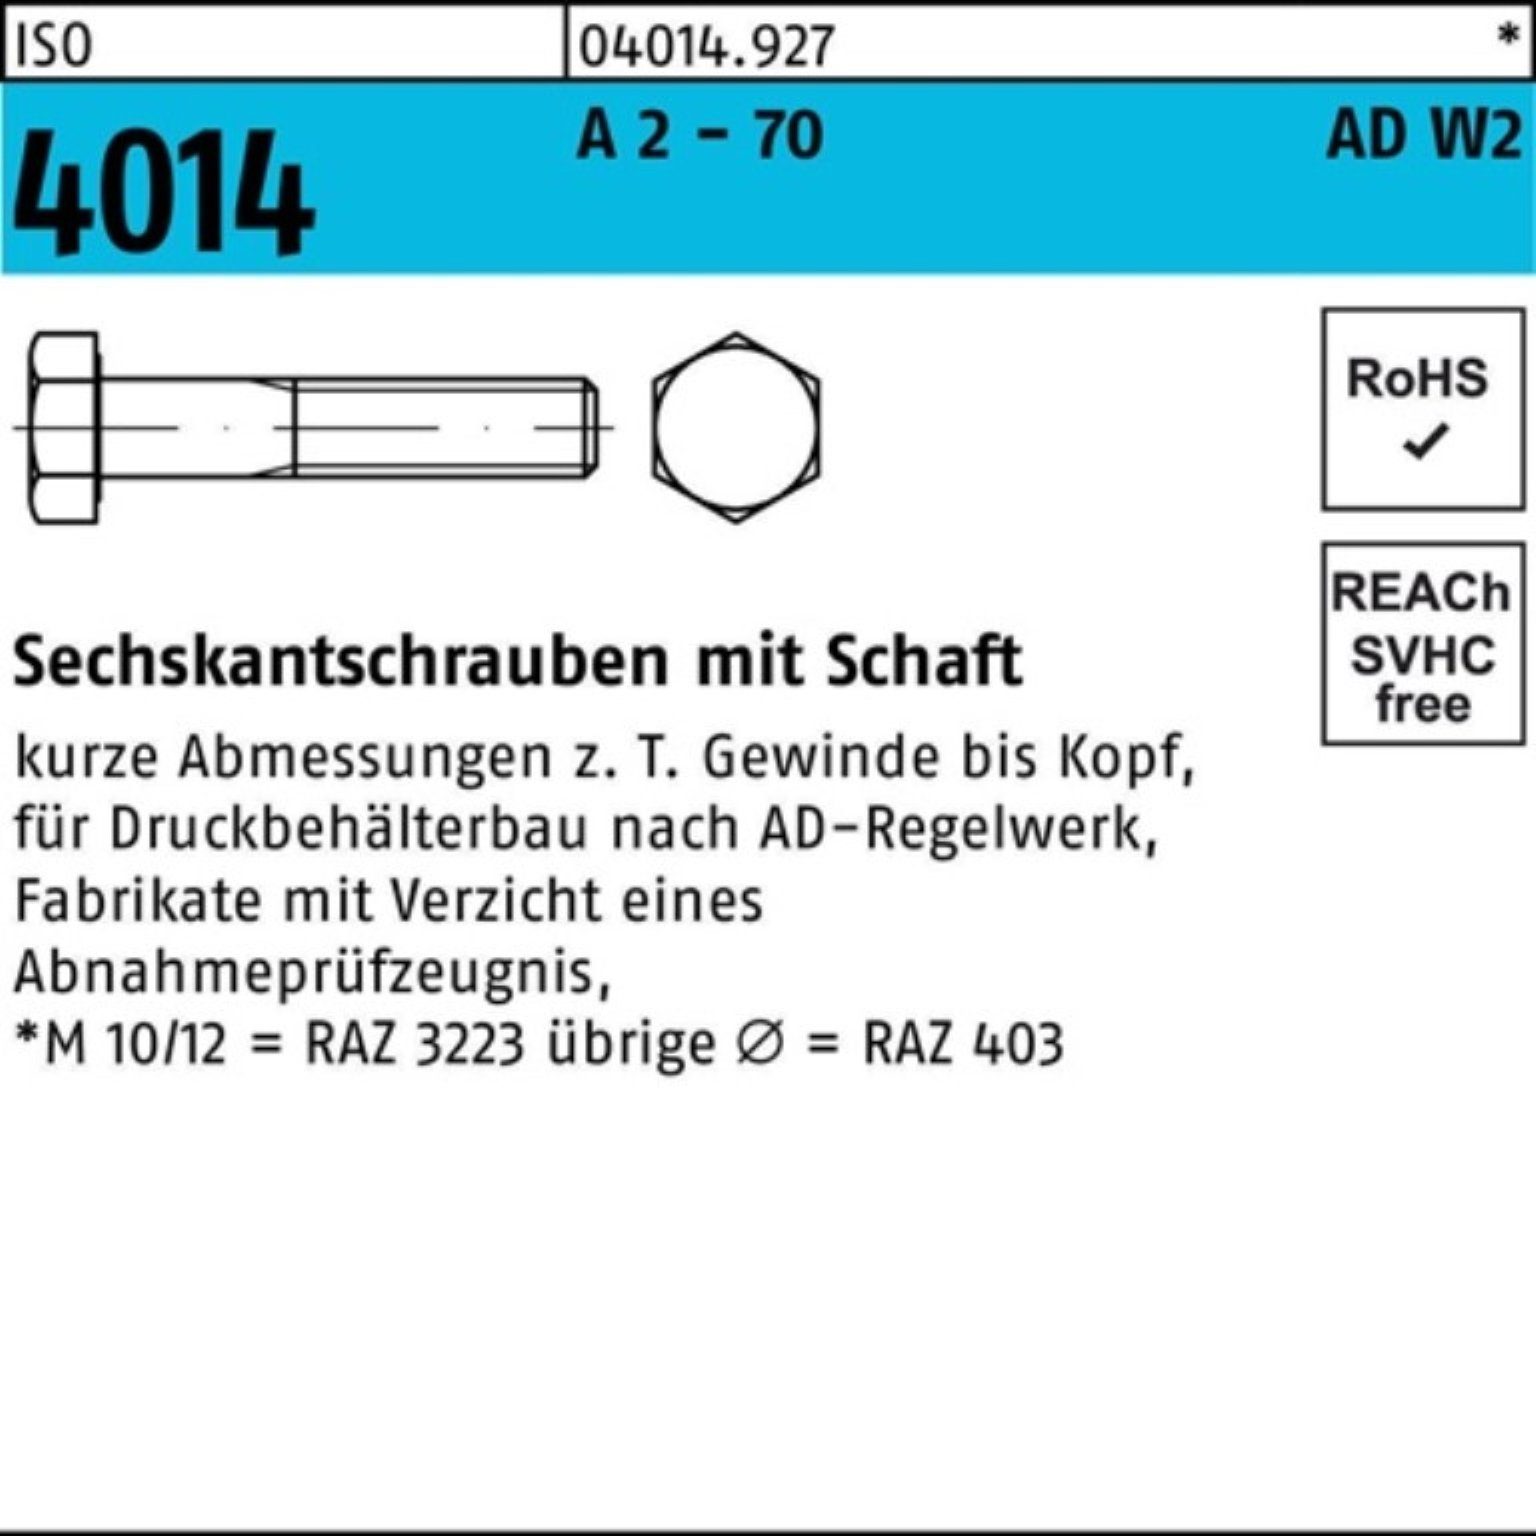 Sechskantschraube M12x Sechskantschraube Pack 120 AD-W2 2 - 70 Bufab 2 4014 A ISO 100er Schaft